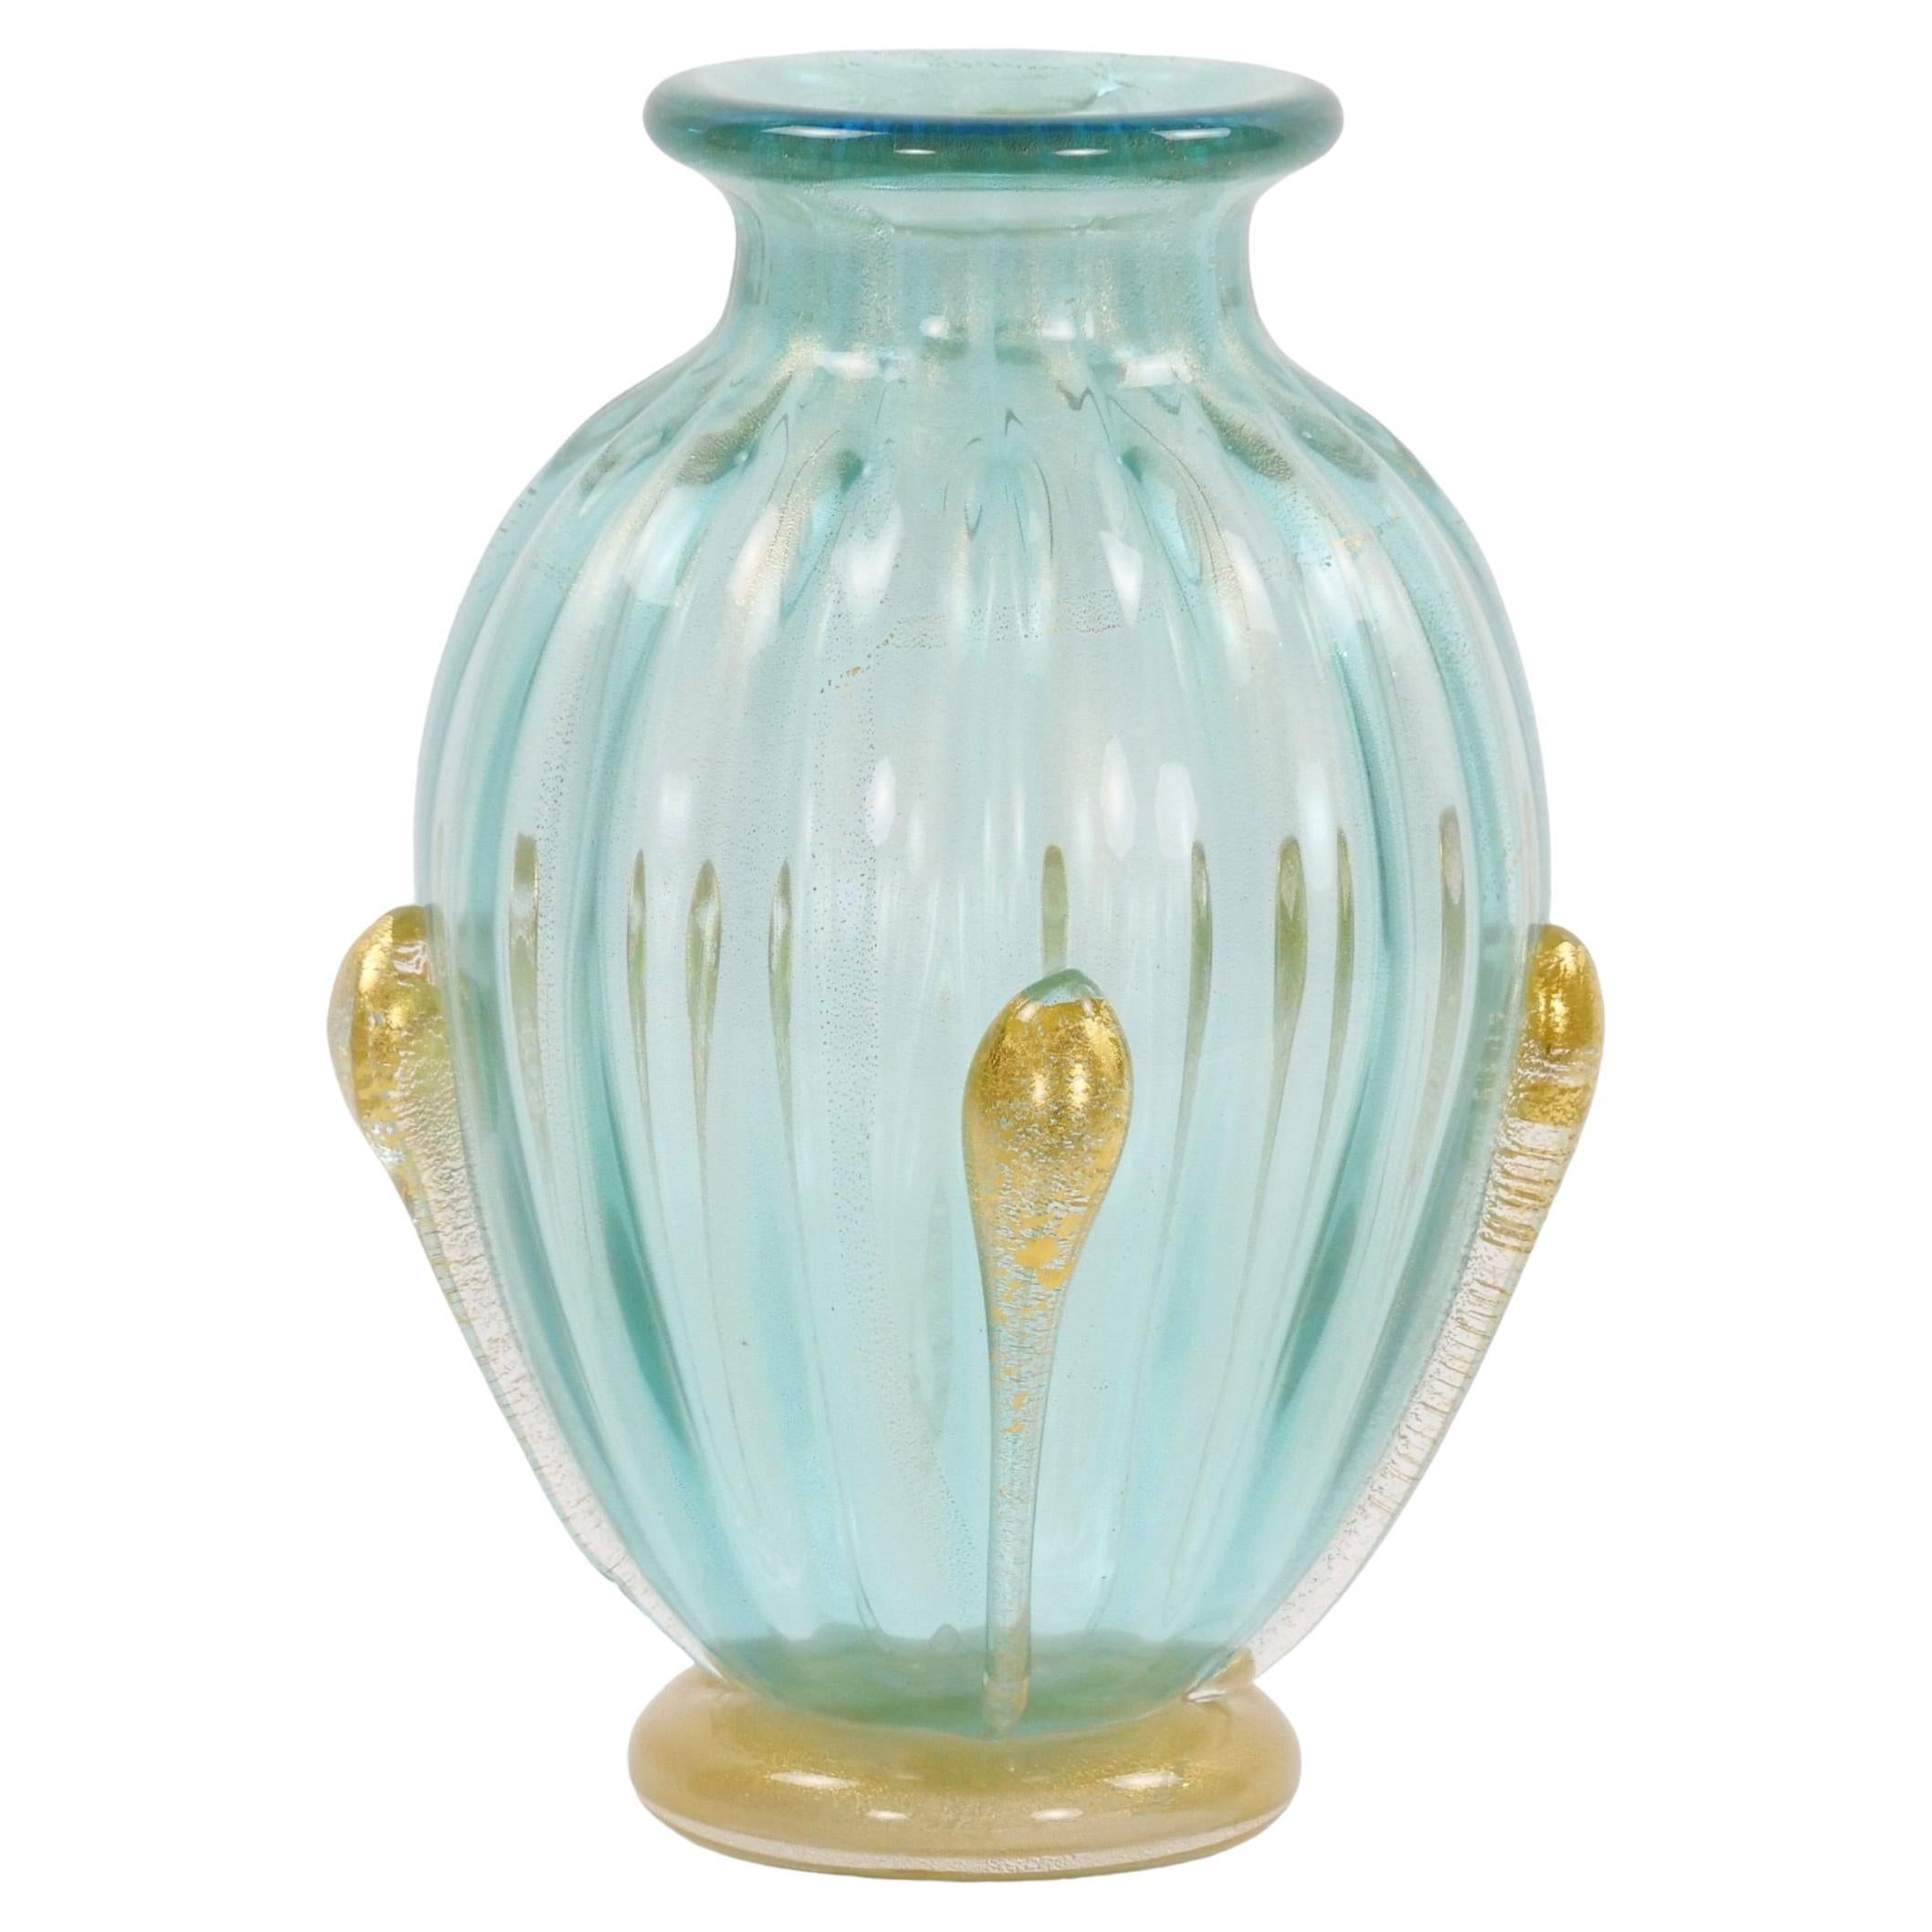 Exquisite venezianische Vase aus mundgeblasenem, mundgeblasenem Glas mit Goldflecken, handgefertigt